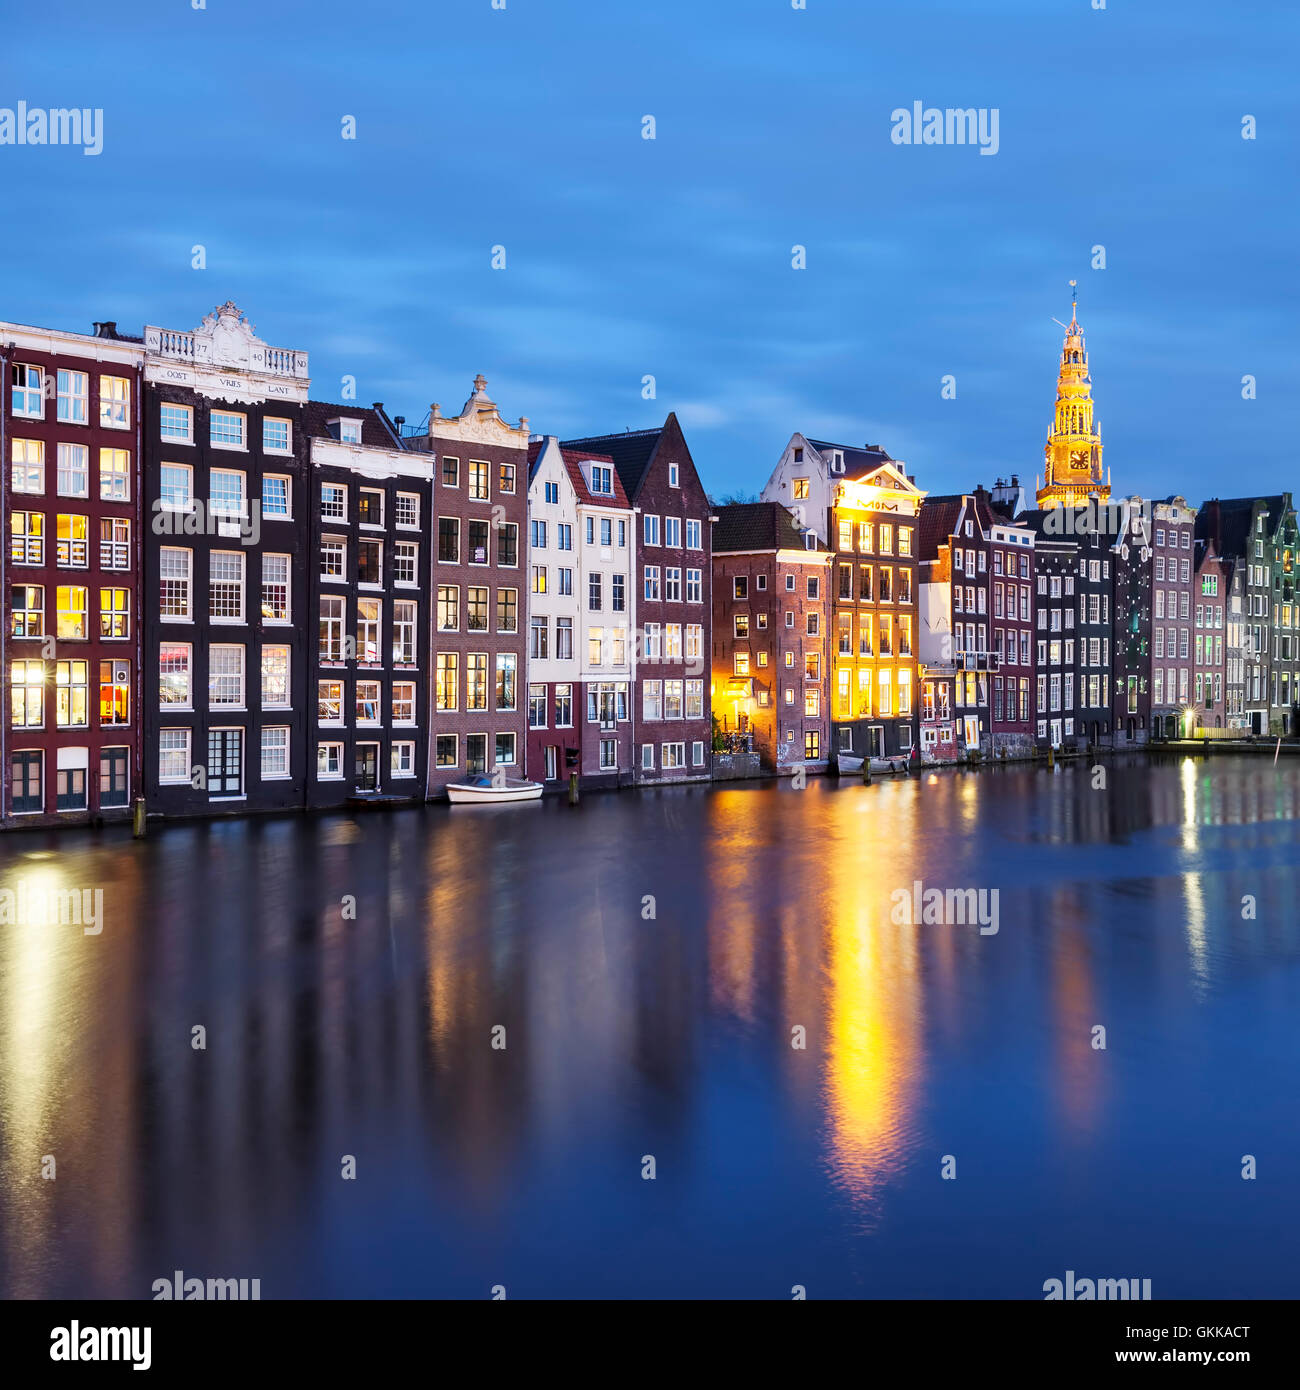 De vieux bâtiments traditionnels à Amsterdam par nuit Banque D'Images